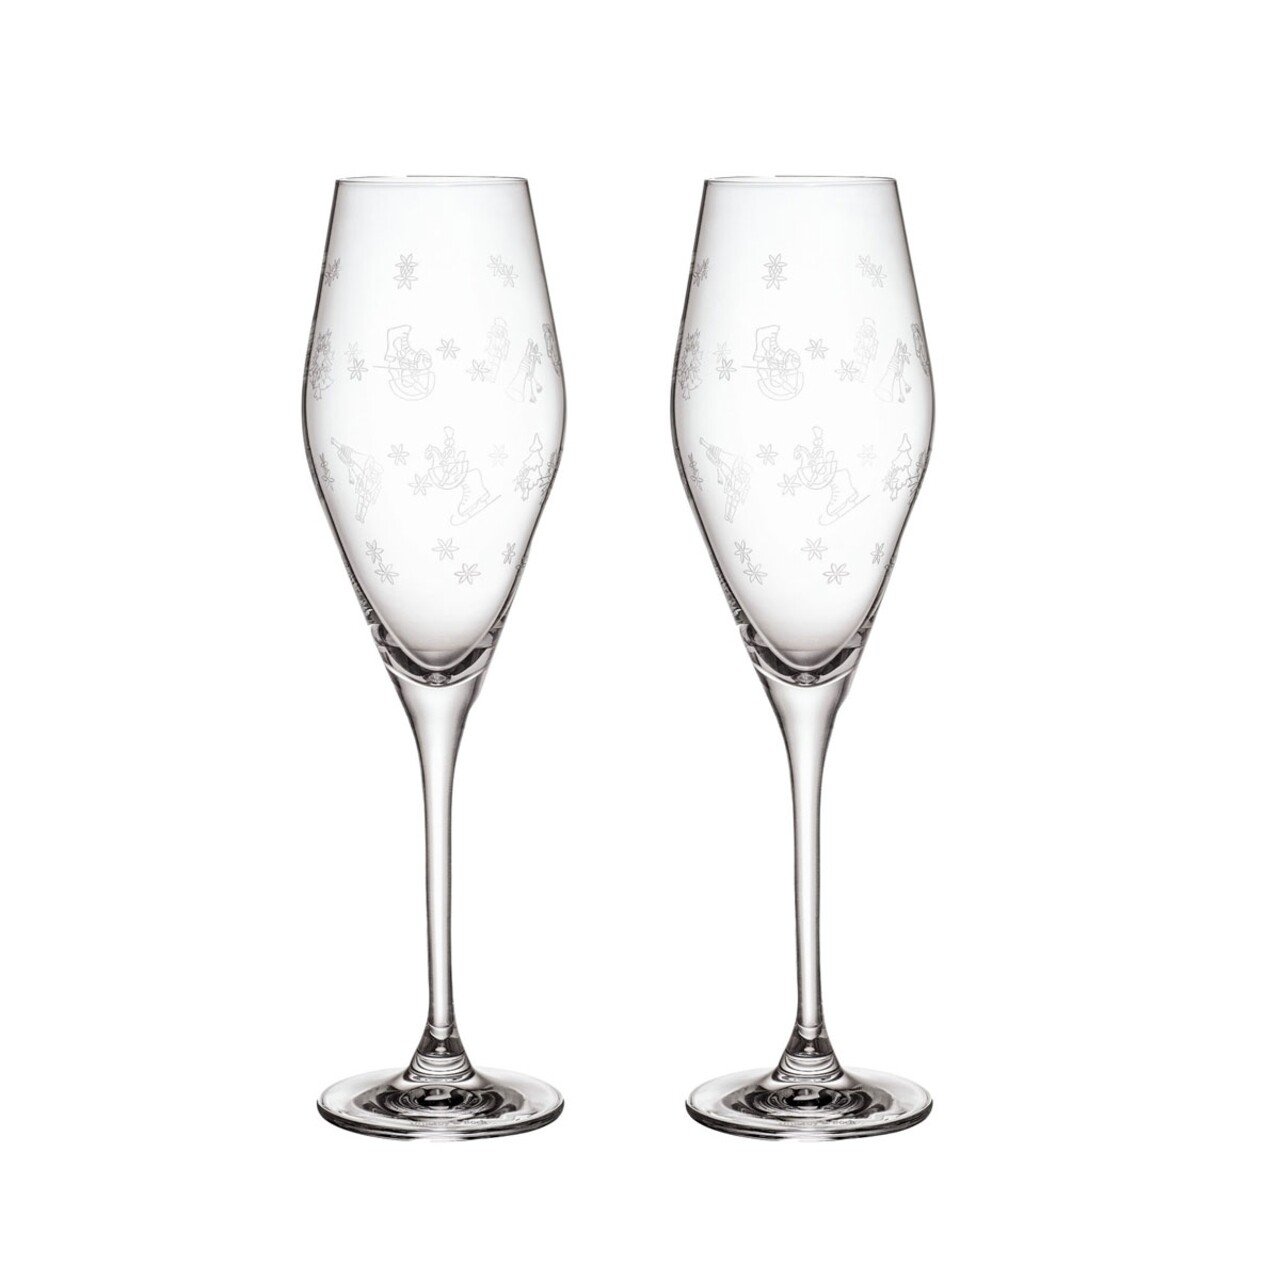 2 pezsgős pohár készlet, Villeroy & Boch, Toy's Delight, 260 ml, kristályüveg